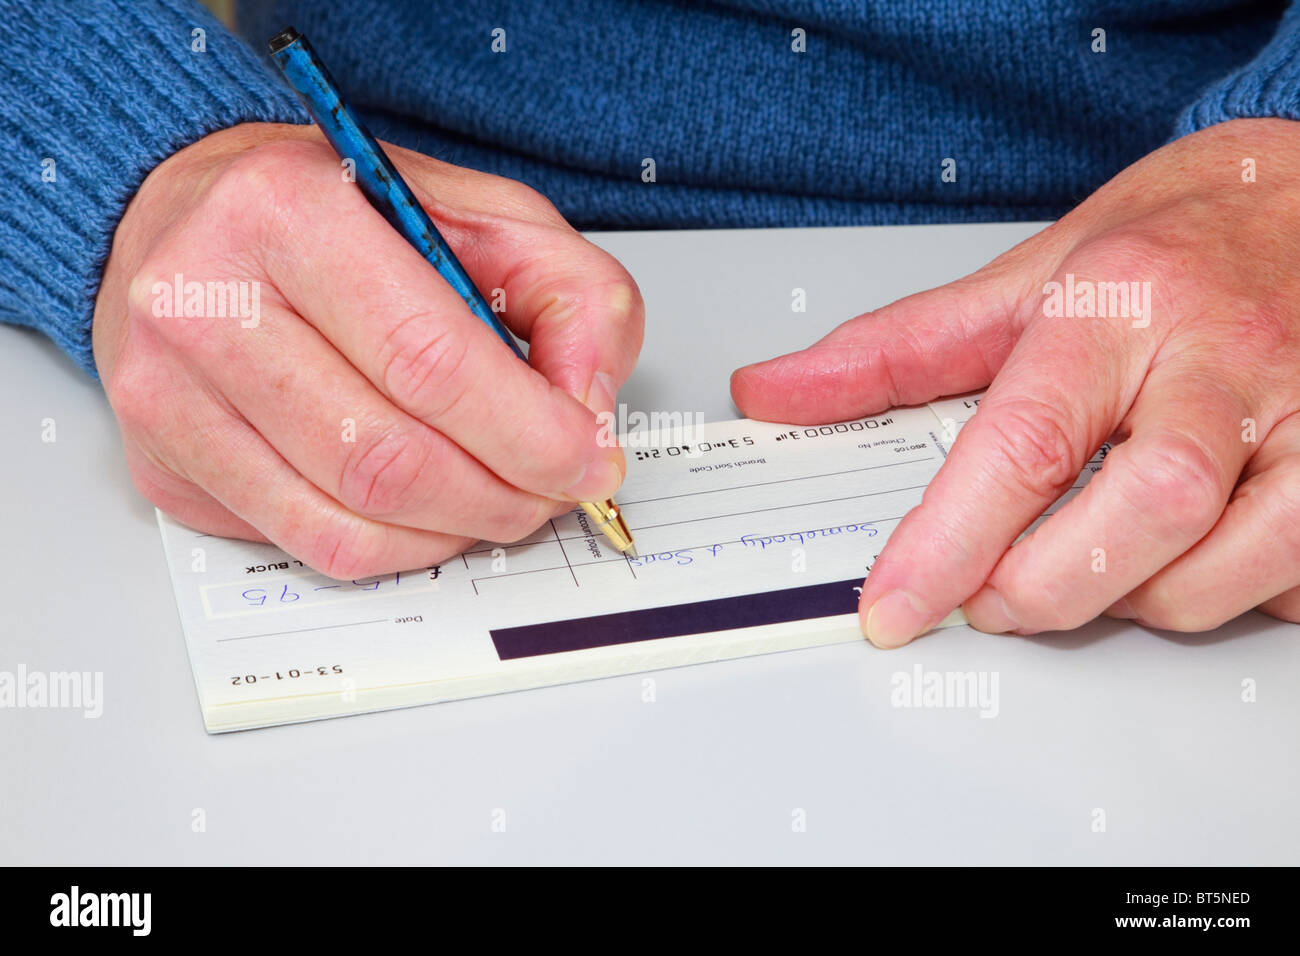 Nahaufnahme einer reifen Frau einen Scheck (Scheck) in einem Scheckbuch schreibt, eine Rechnung zu bezahlen. England, UK, Großbritannien. Stockfoto